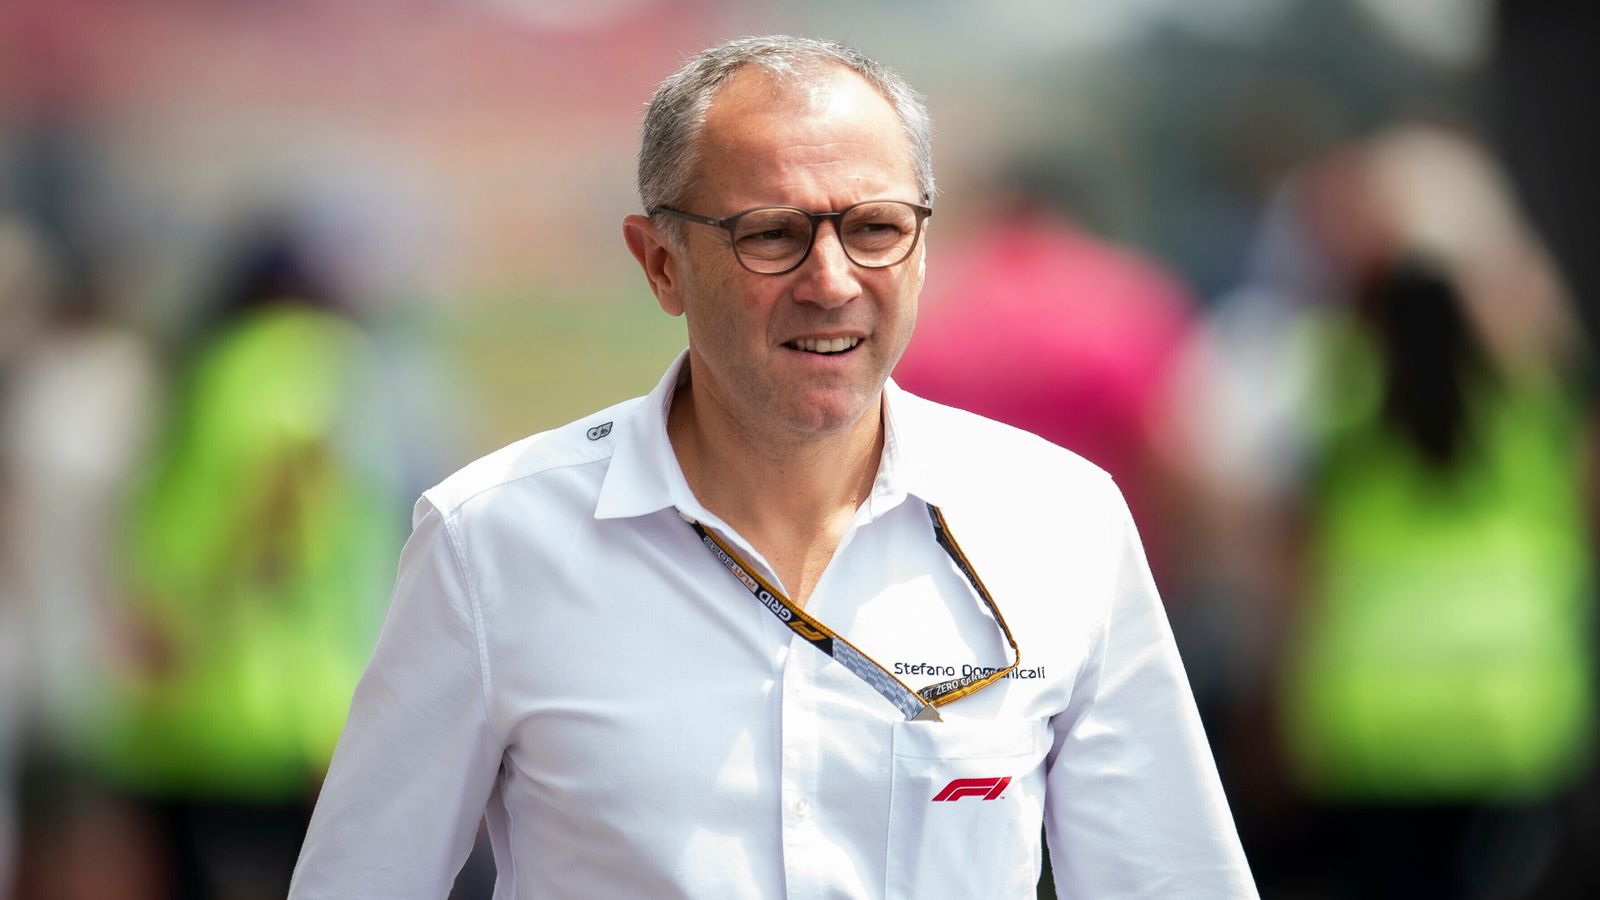 Stefano Domenicali dice que las sesiones de práctica de F1 permanecen, pero sería un ‘error’ no considerar cambios |  Noticias F1